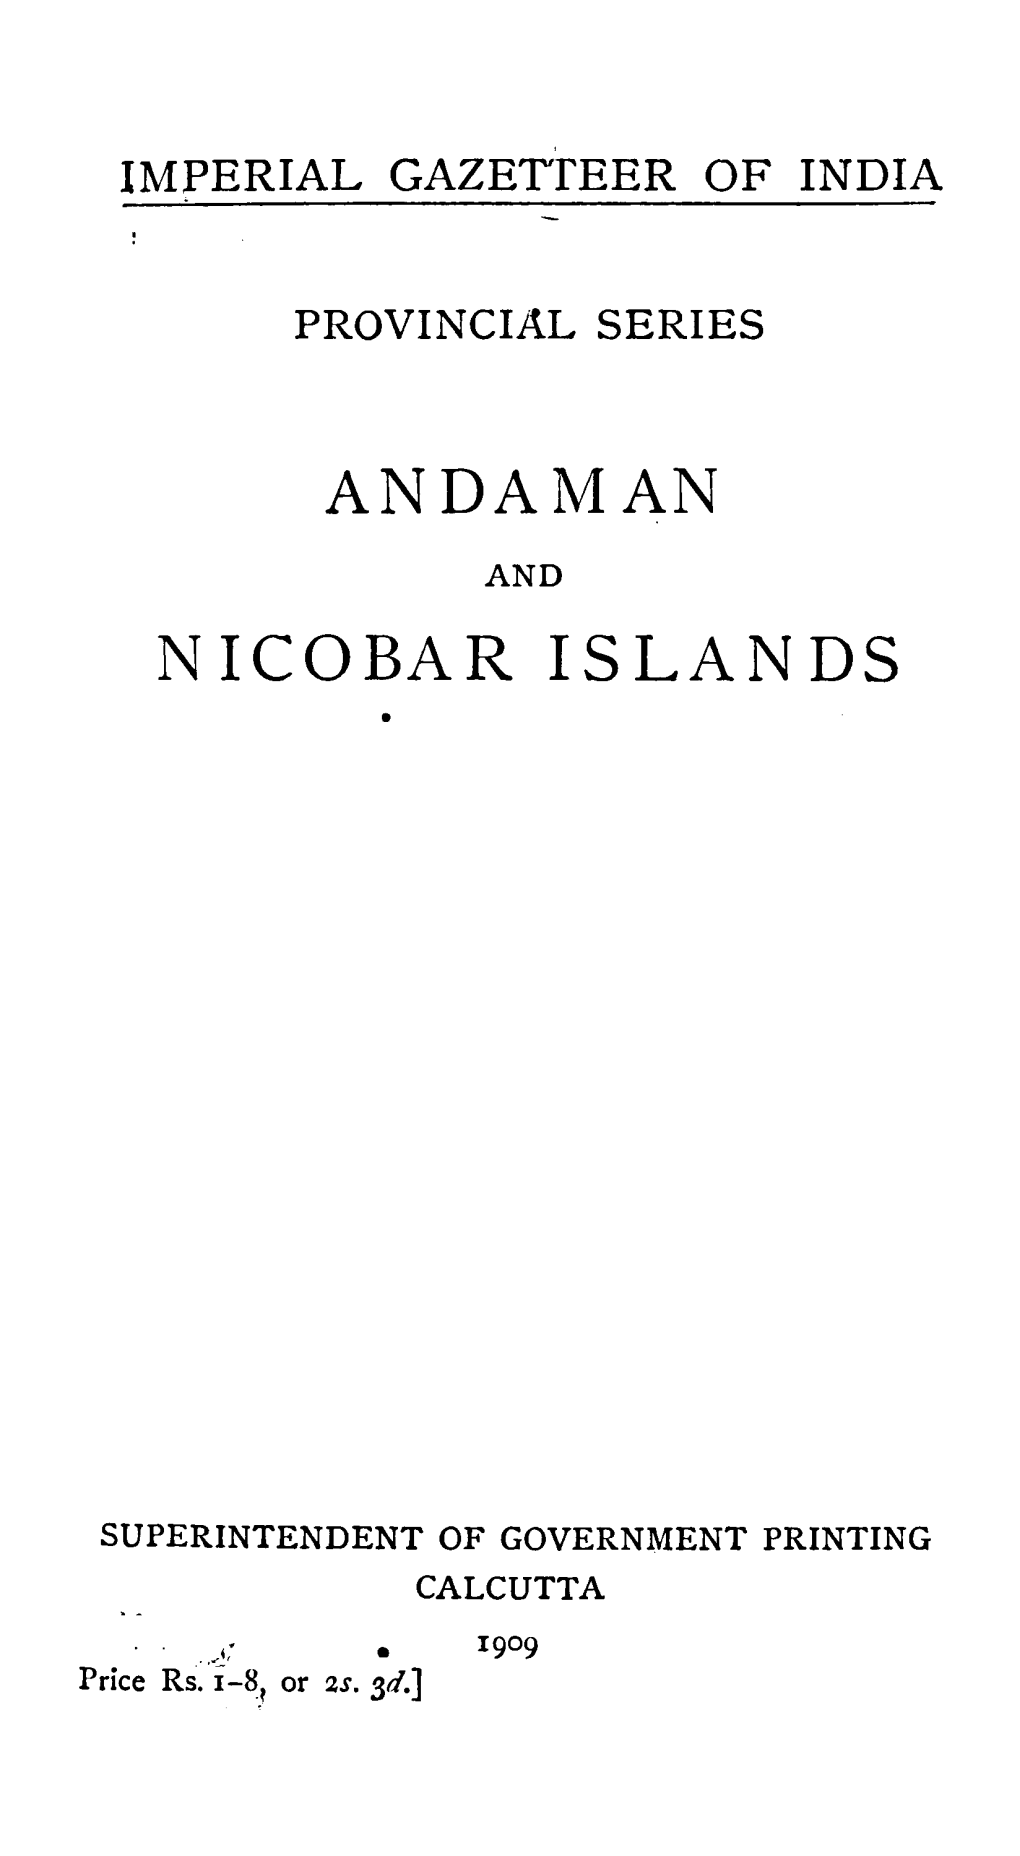 An Daman N I Co Bar Islands